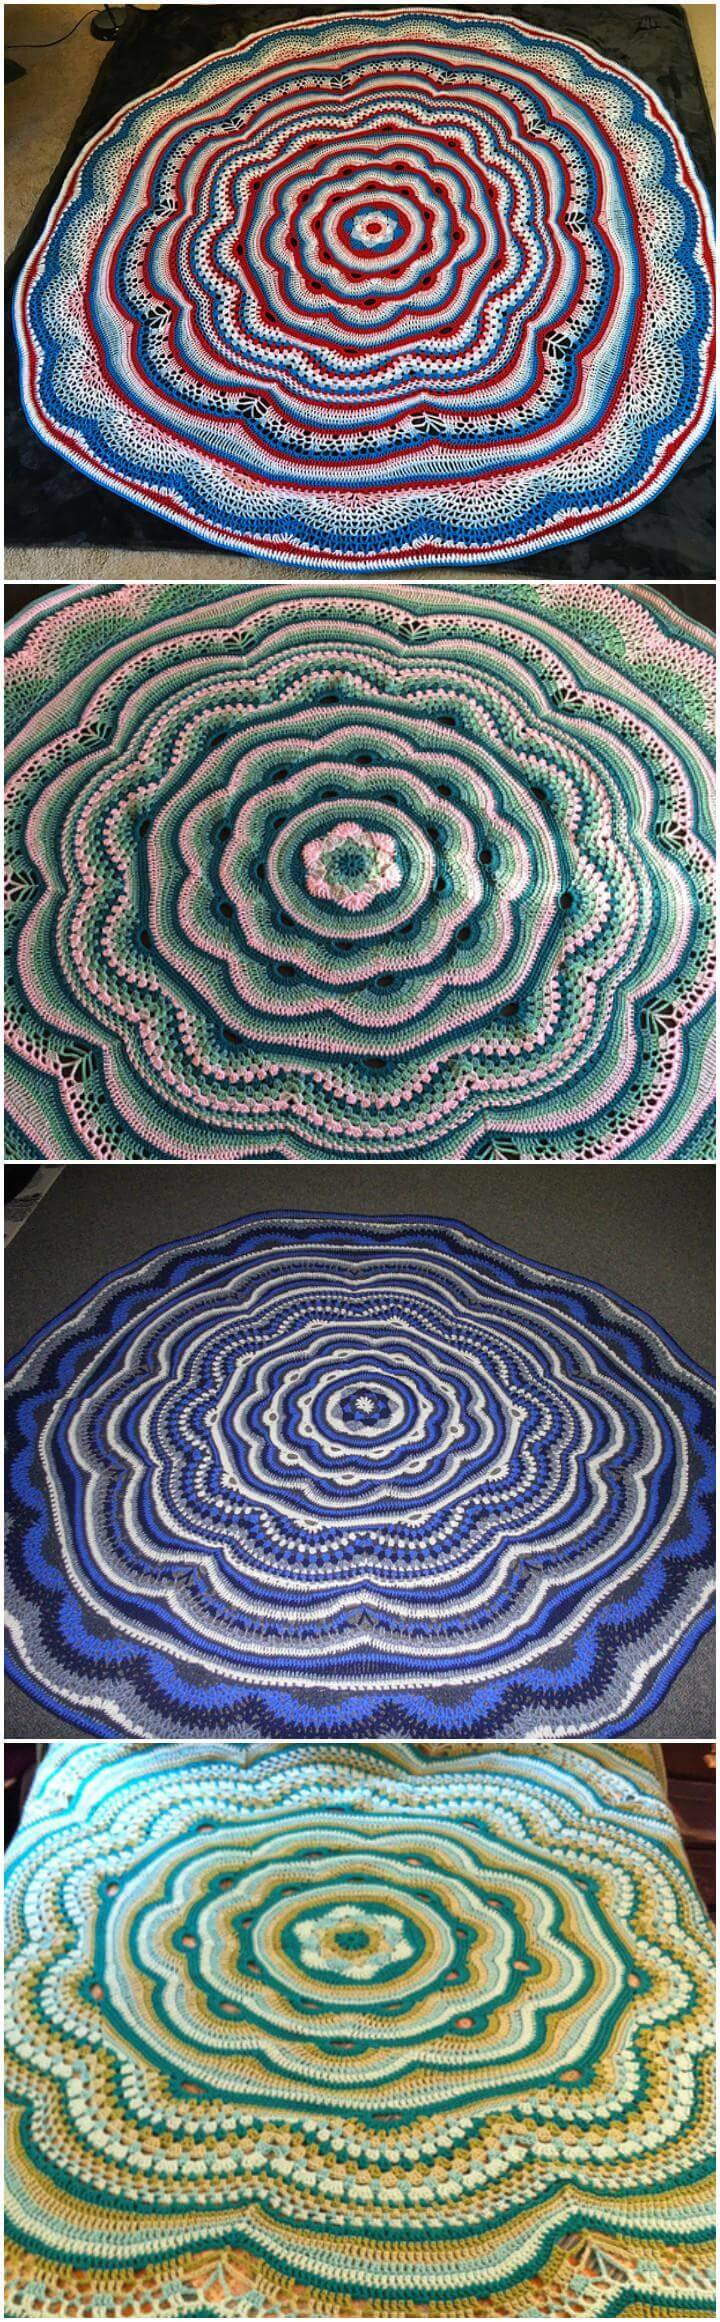 crochet tides of change mandala